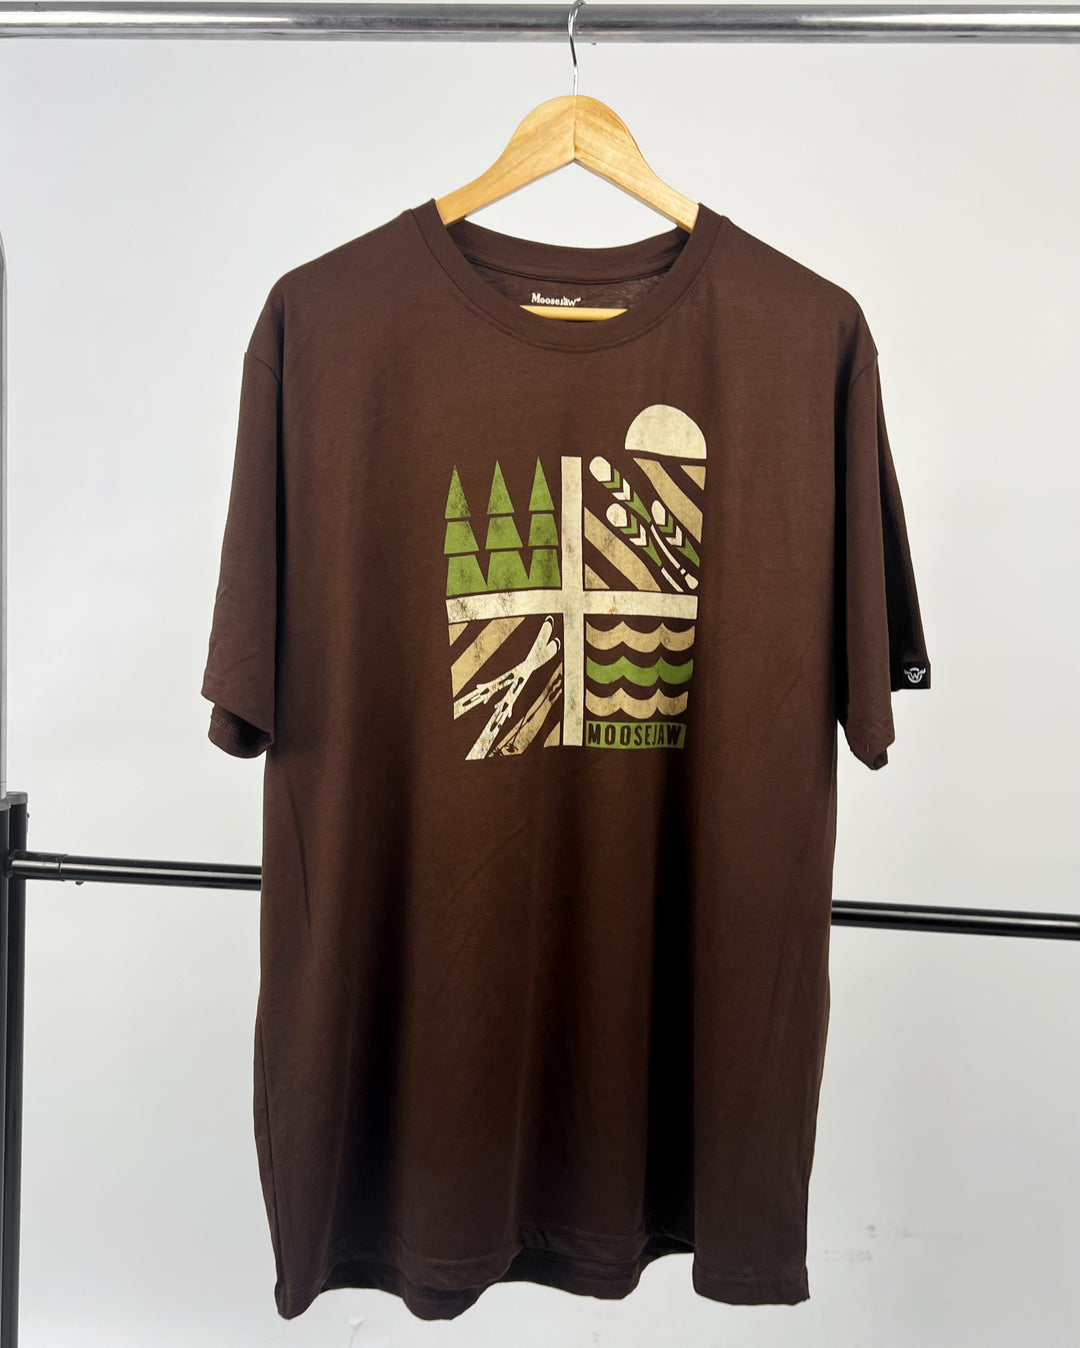 Moosejaw print T-shirt in brown